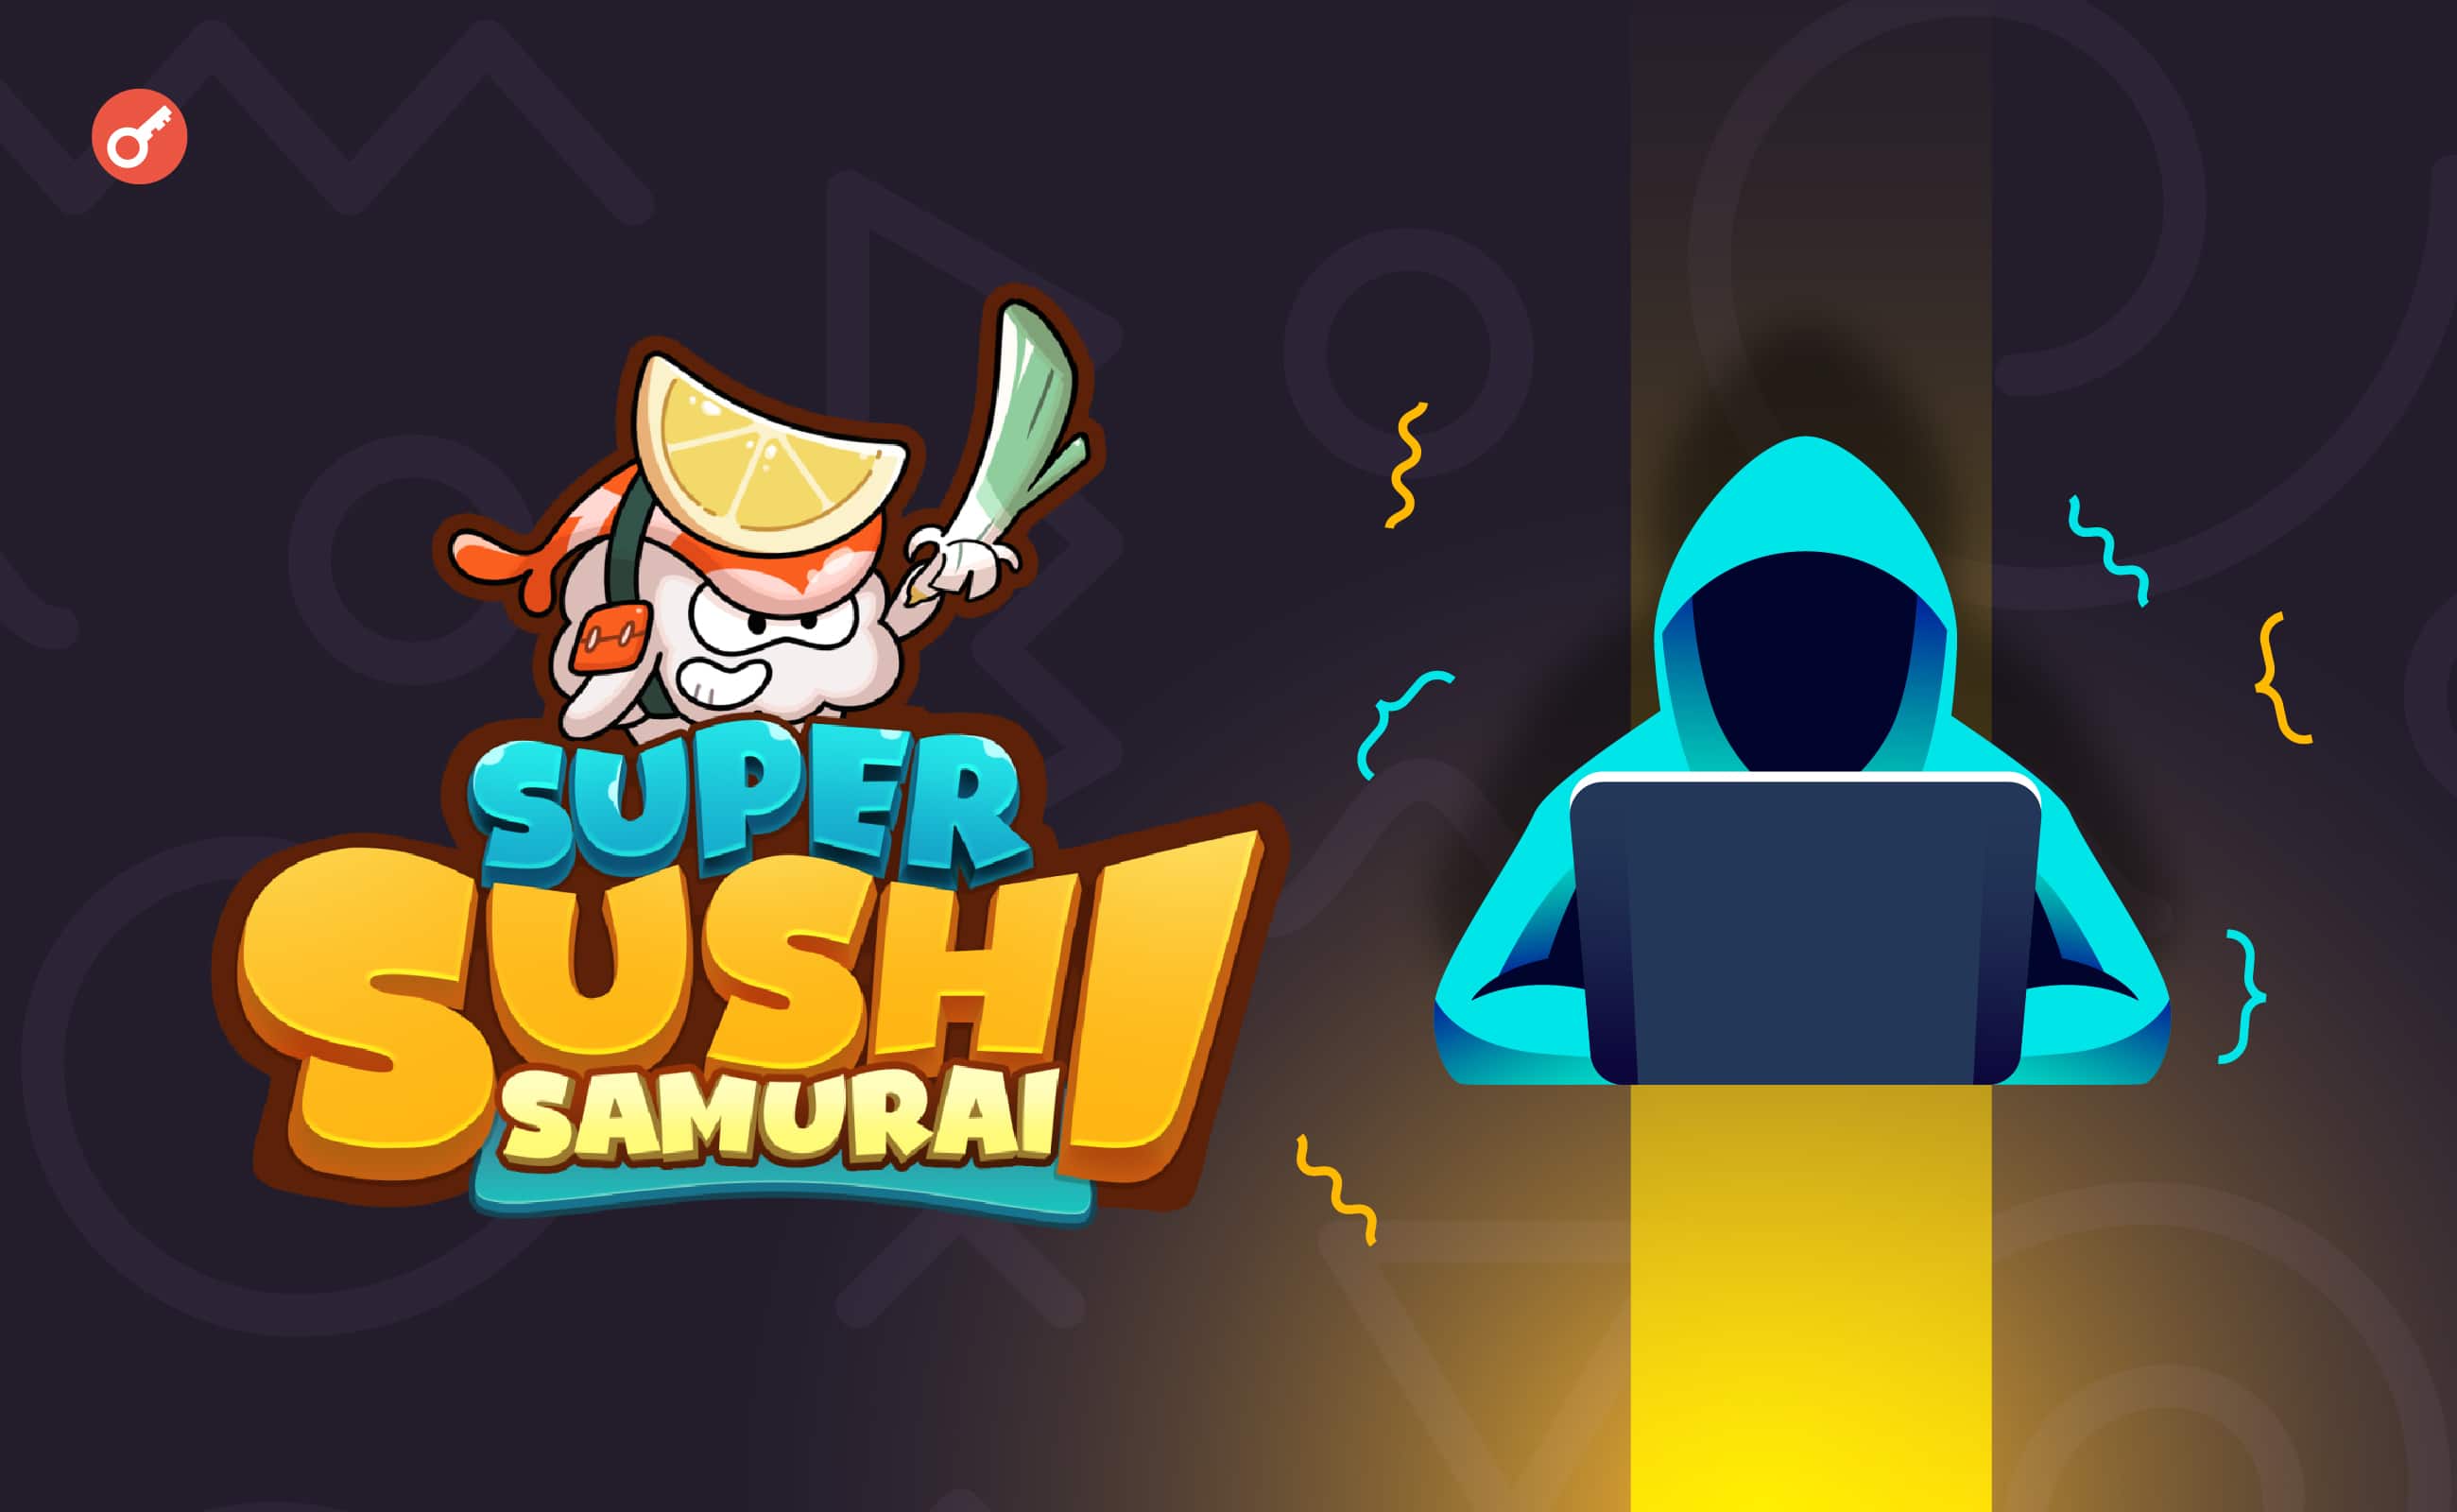 Projekt Super Sushi Samurai obsługiwany przez Blast padł ofiarą ataku hakerskiego o wartości 4,6 miliona dolarów. Główny kolaż wiadomości.